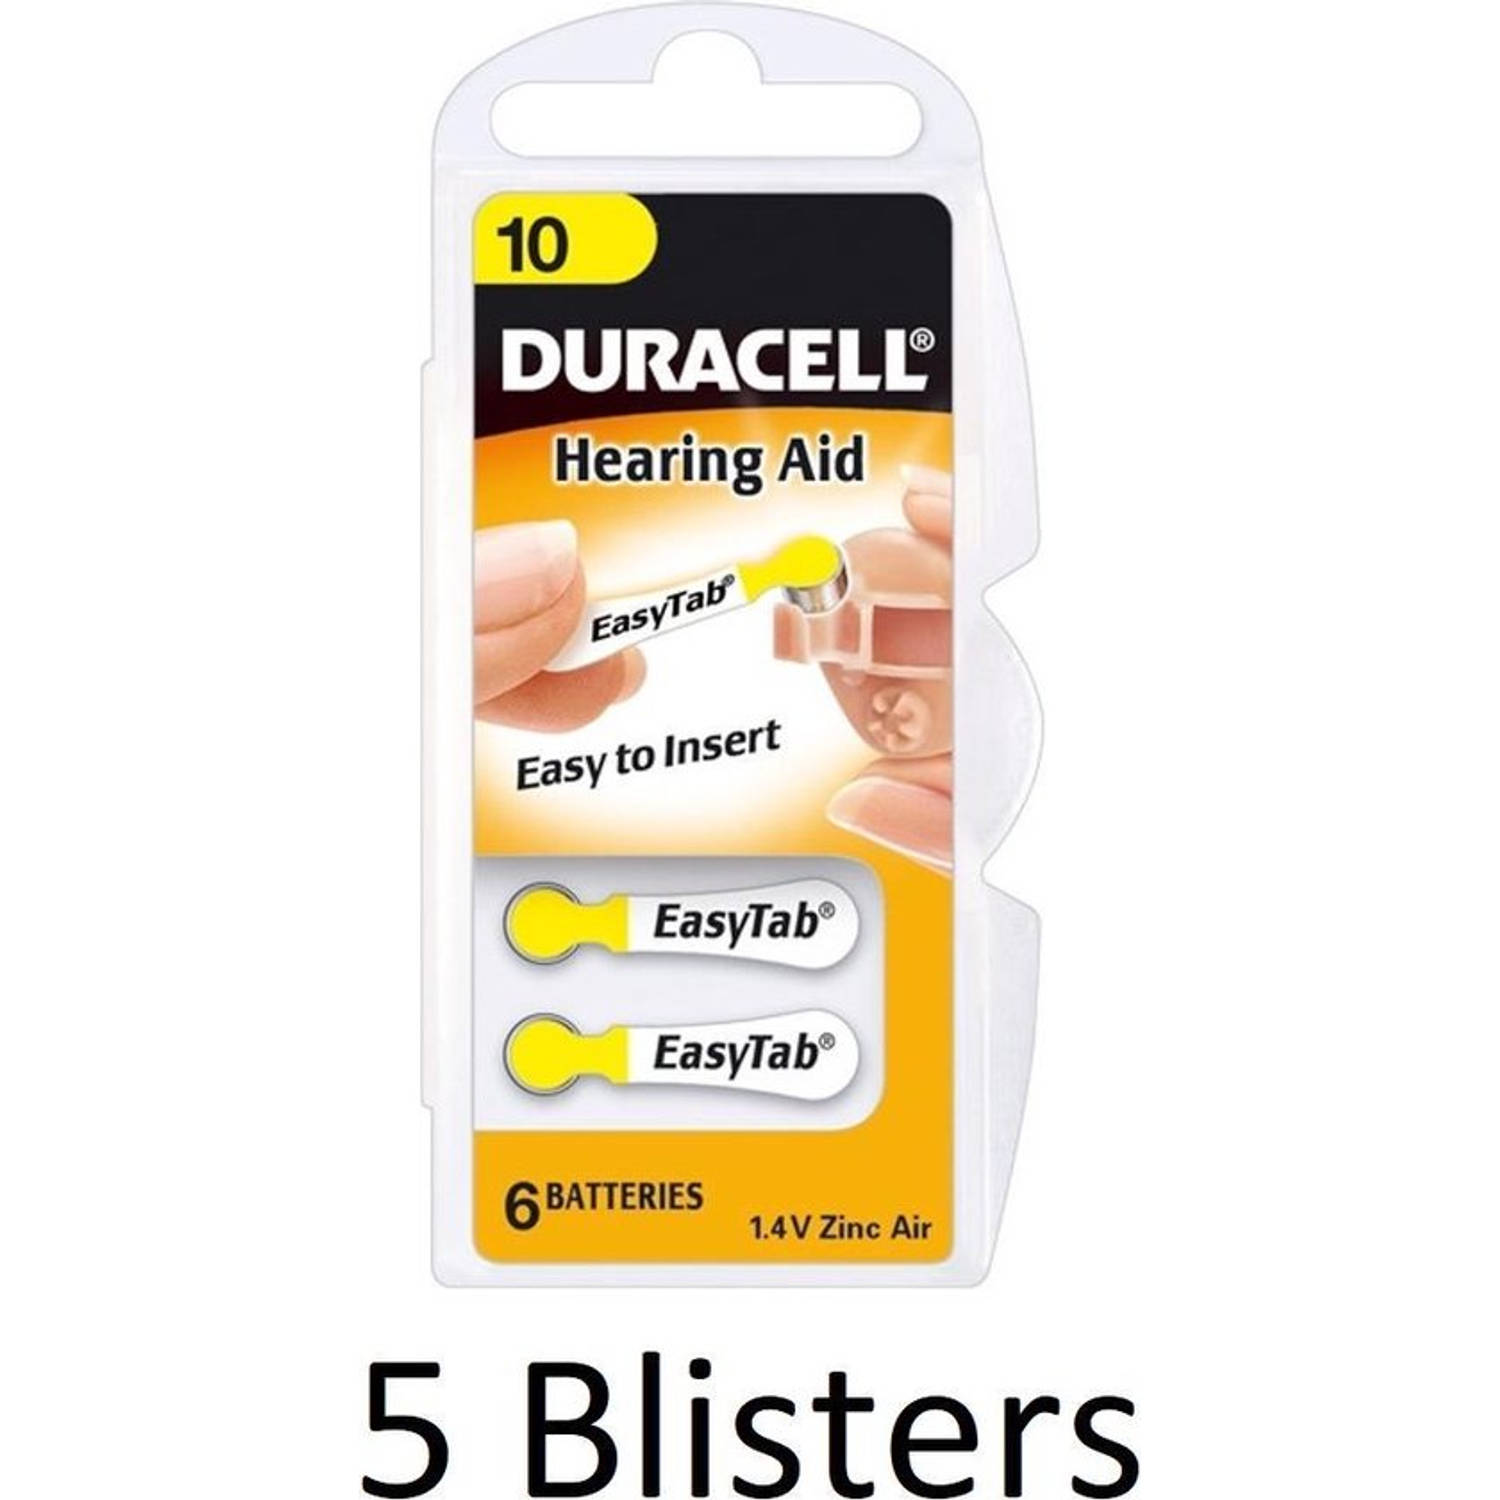 30 Stuks (5 Blisters a 6 st) Duracell Hearing Aid DA10 1.4V niet-oplaadbare batterij